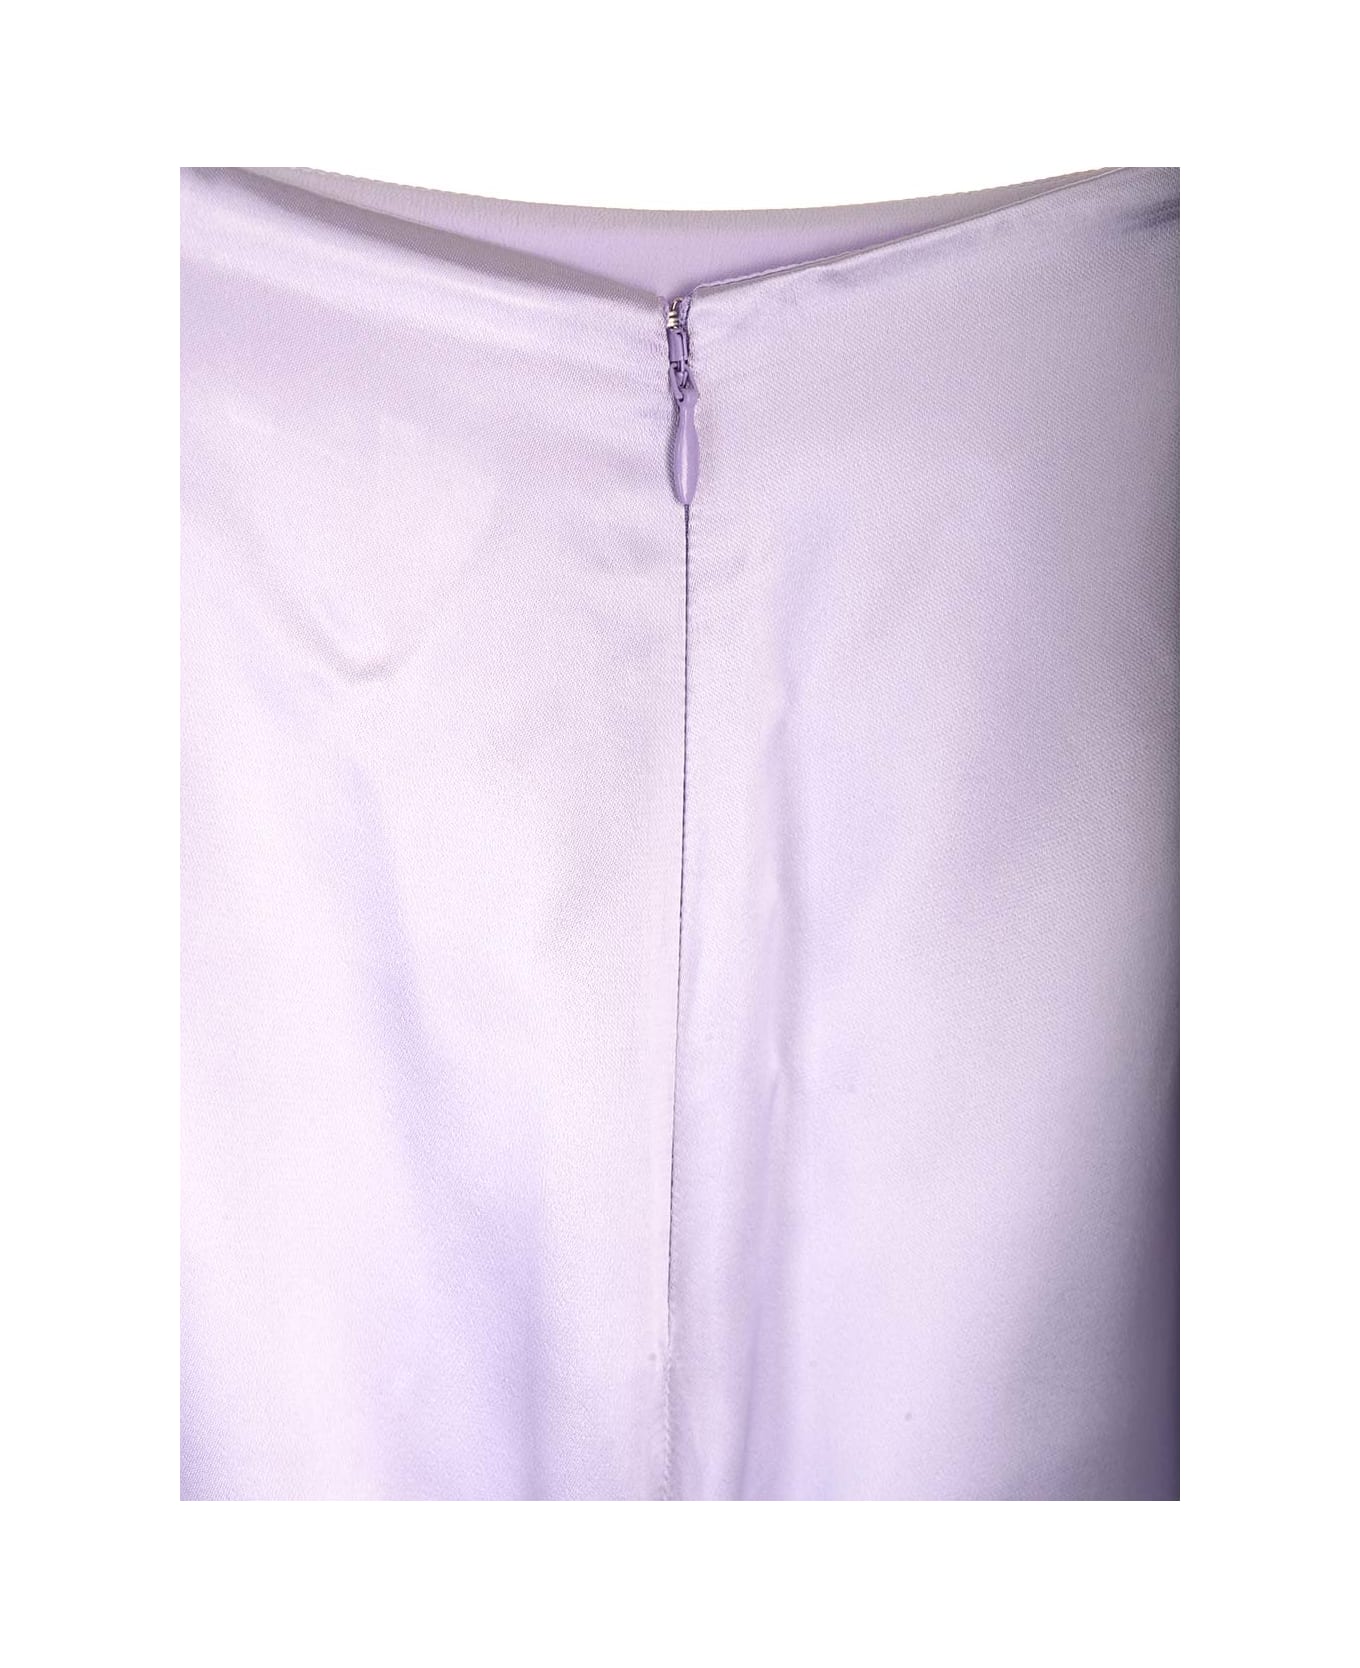 Del Core Long Train Skirt - Violet